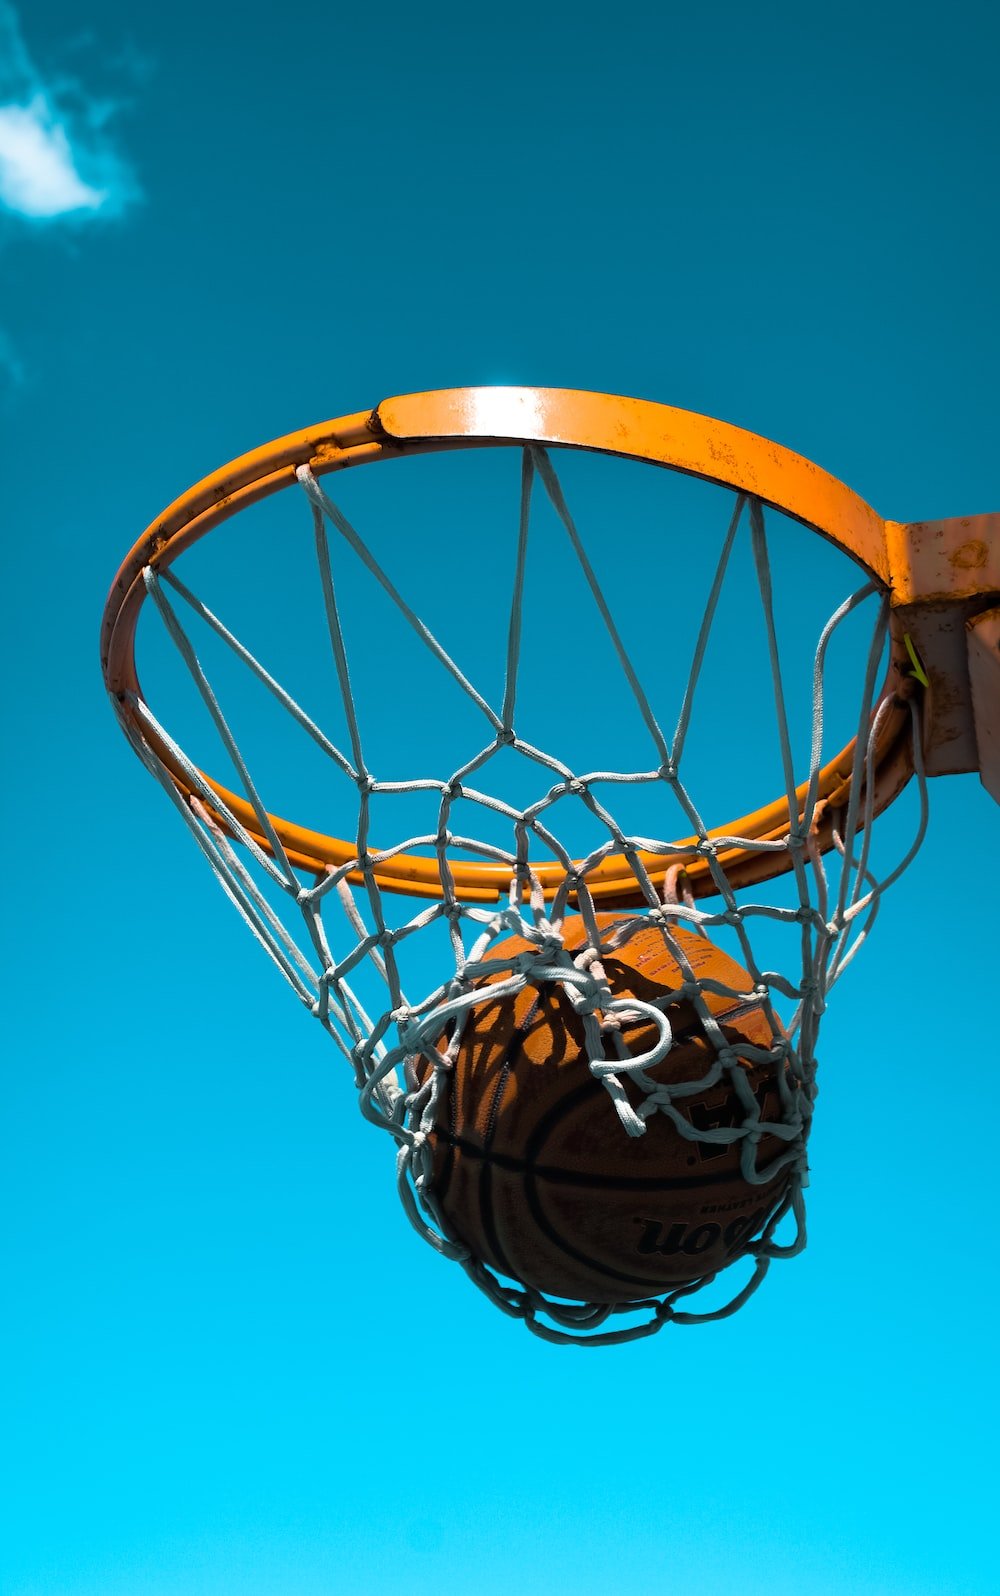 Basketball Background Image